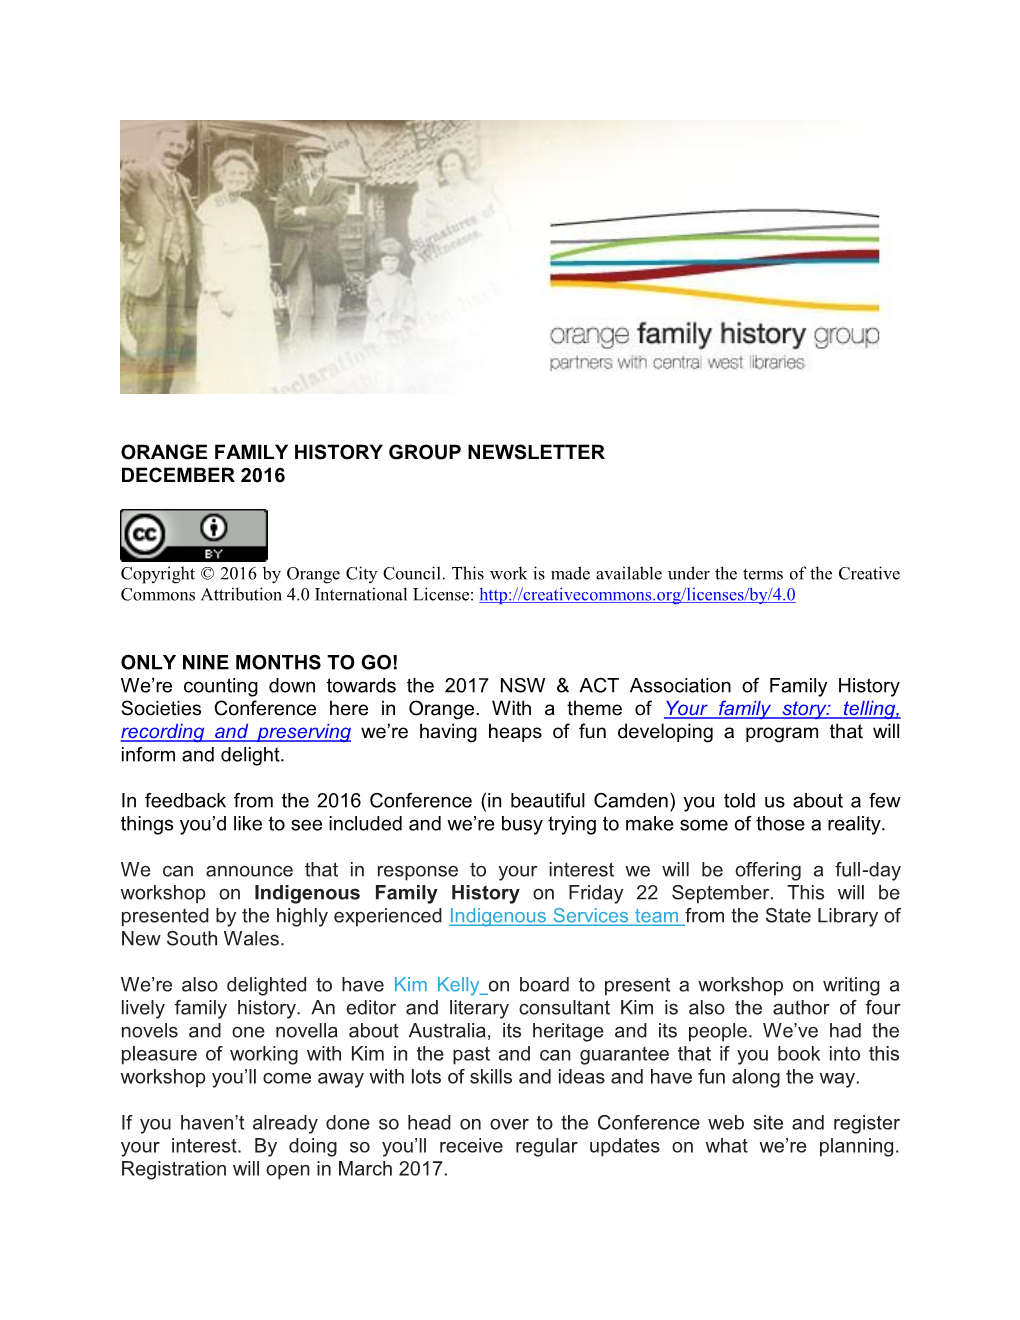 Orange Family History Group Newsletter December 2016